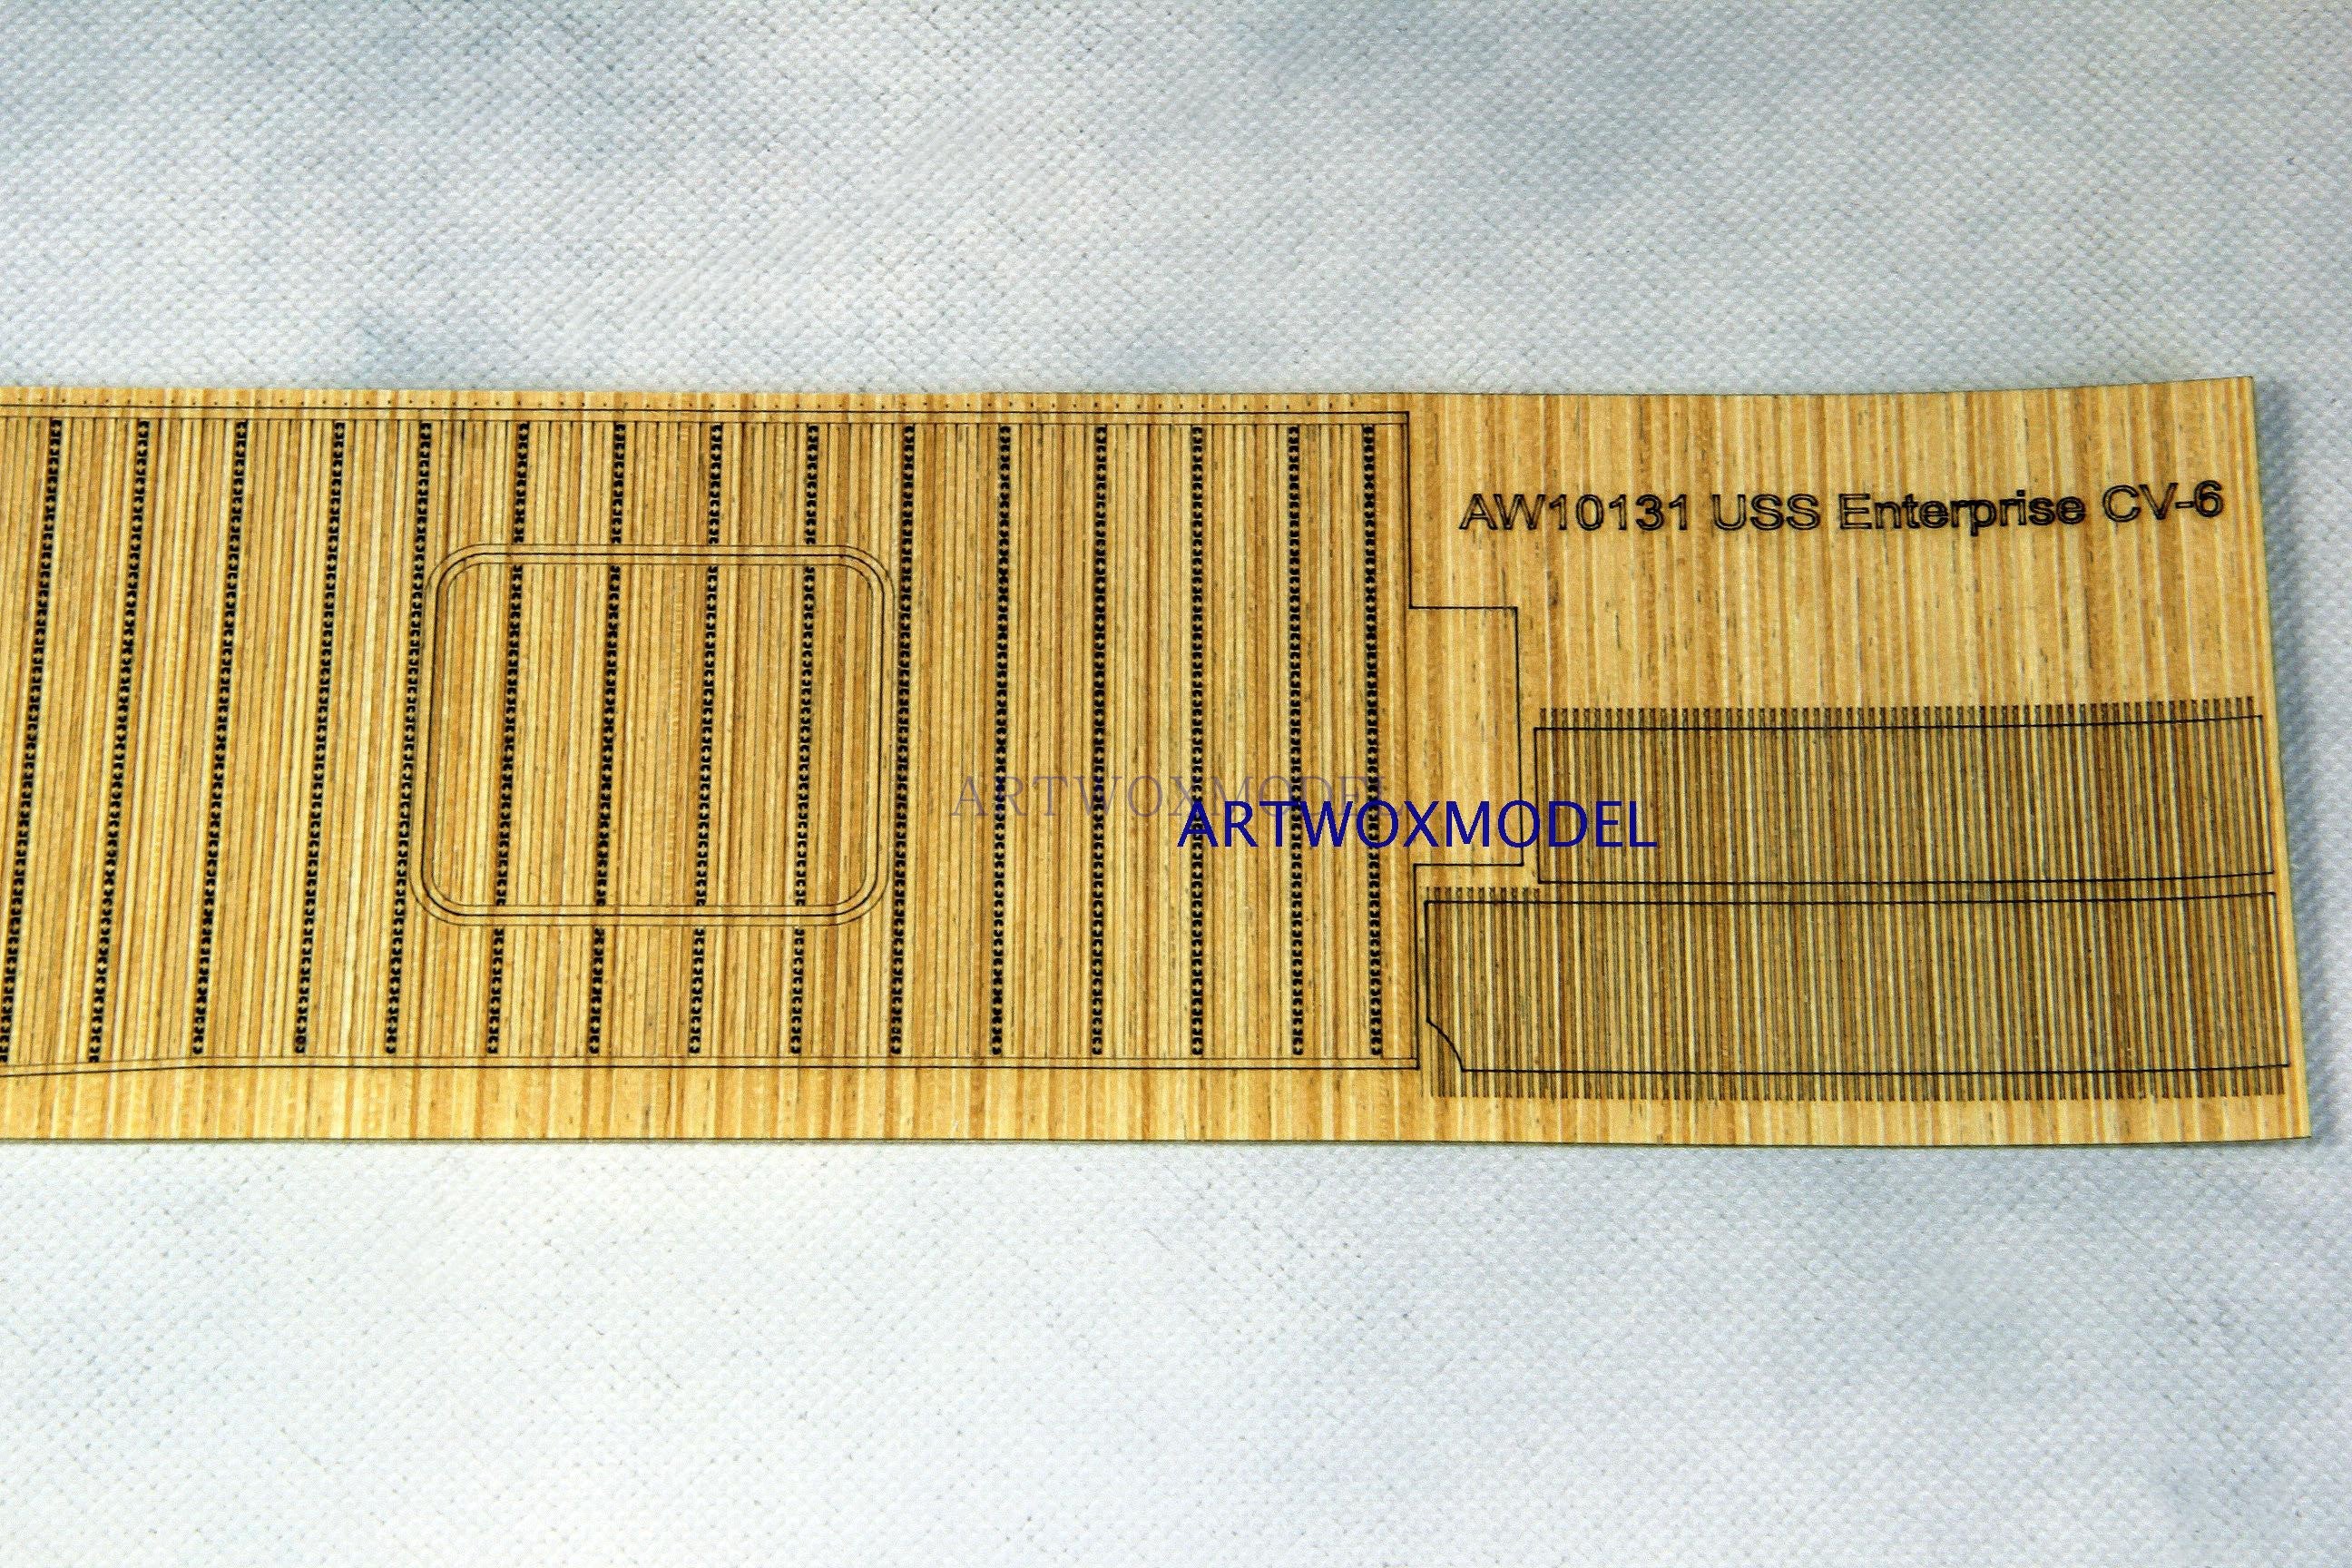 Artwox model wooden deck for MERIT 65302 American CV-6 enterprise aircraft carrier blue wooden deck AW10131A